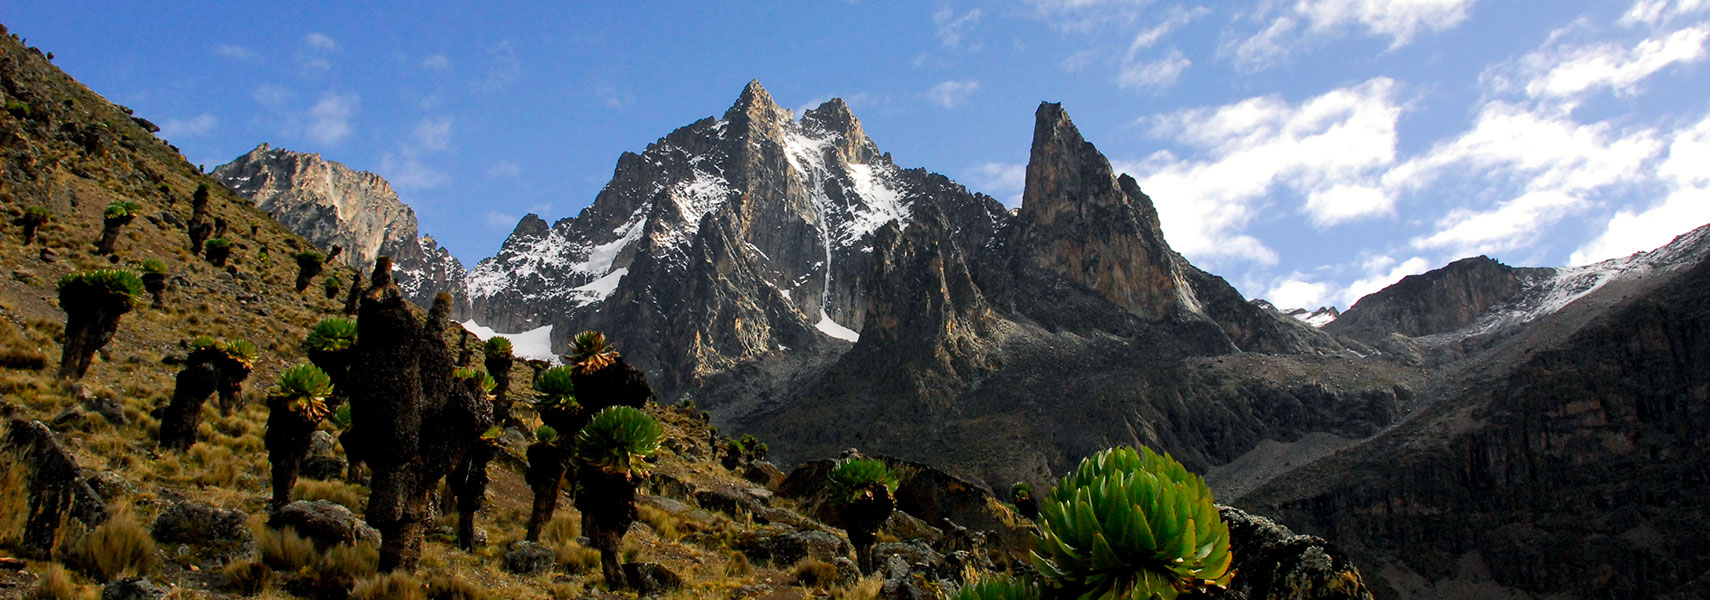 Mount Kenya highest mountain in Kenya